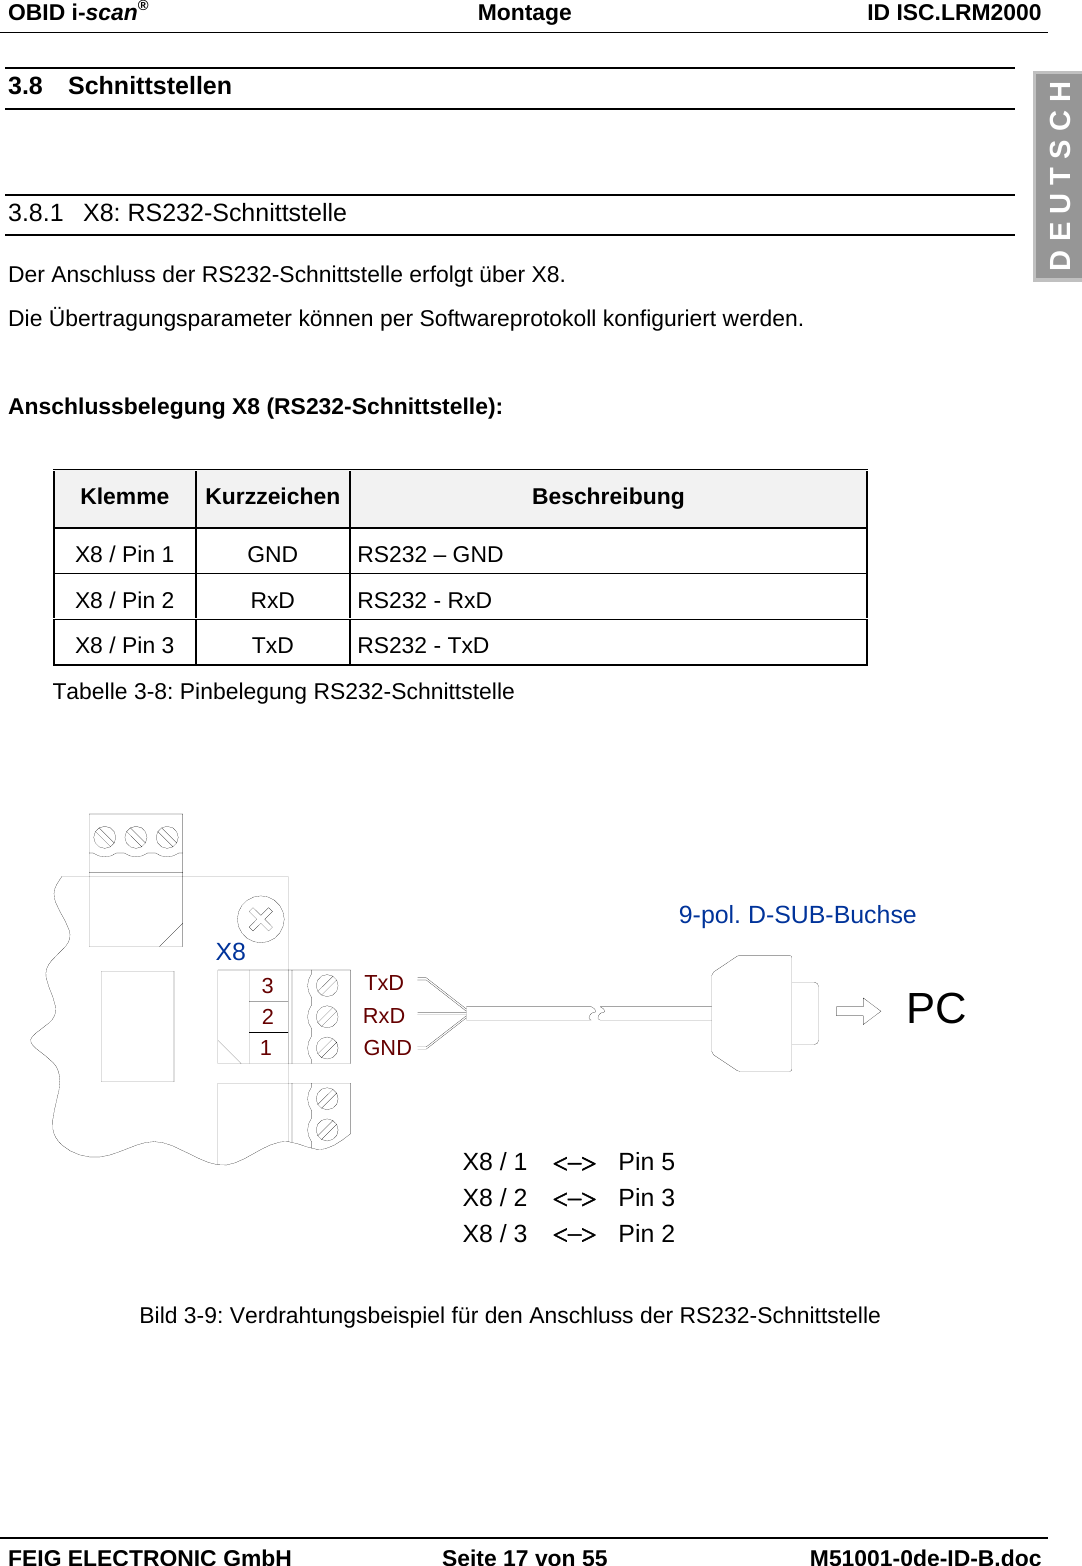 OBID i-scan®Montage ID ISC.LRM2000FEIG ELECTRONIC GmbH Seite 17 von 55 M51001-0de-ID-B.docD E U T S C H3.8  Schnittstellen3.8.1  X8: RS232-SchnittstelleDer Anschluss der RS232-Schnittstelle erfolgt über X8.Die Übertragungsparameter können per Softwareprotokoll konfiguriert werden.Anschlussbelegung X8 (RS232-Schnittstelle):Klemme Kurzzeichen BeschreibungX8 / Pin 1 GND RS232 – GND X8 / Pin 2 RxD RS232 - RxD X8 / Pin 3 TxD RS232 - TxD Tabelle 3-8: Pinbelegung RS232-SchnittstelleBild 3-9: Verdrahtungsbeispiel für den Anschluss der RS232-SchnittstellePC&lt;−&gt;&lt;−&gt;&lt;−&gt;X8 / 3 Pin 2X8 / 2 Pin 3X8 / 1 Pin 59-pol. D-SUB-BuchseX8TxDRxDGND321